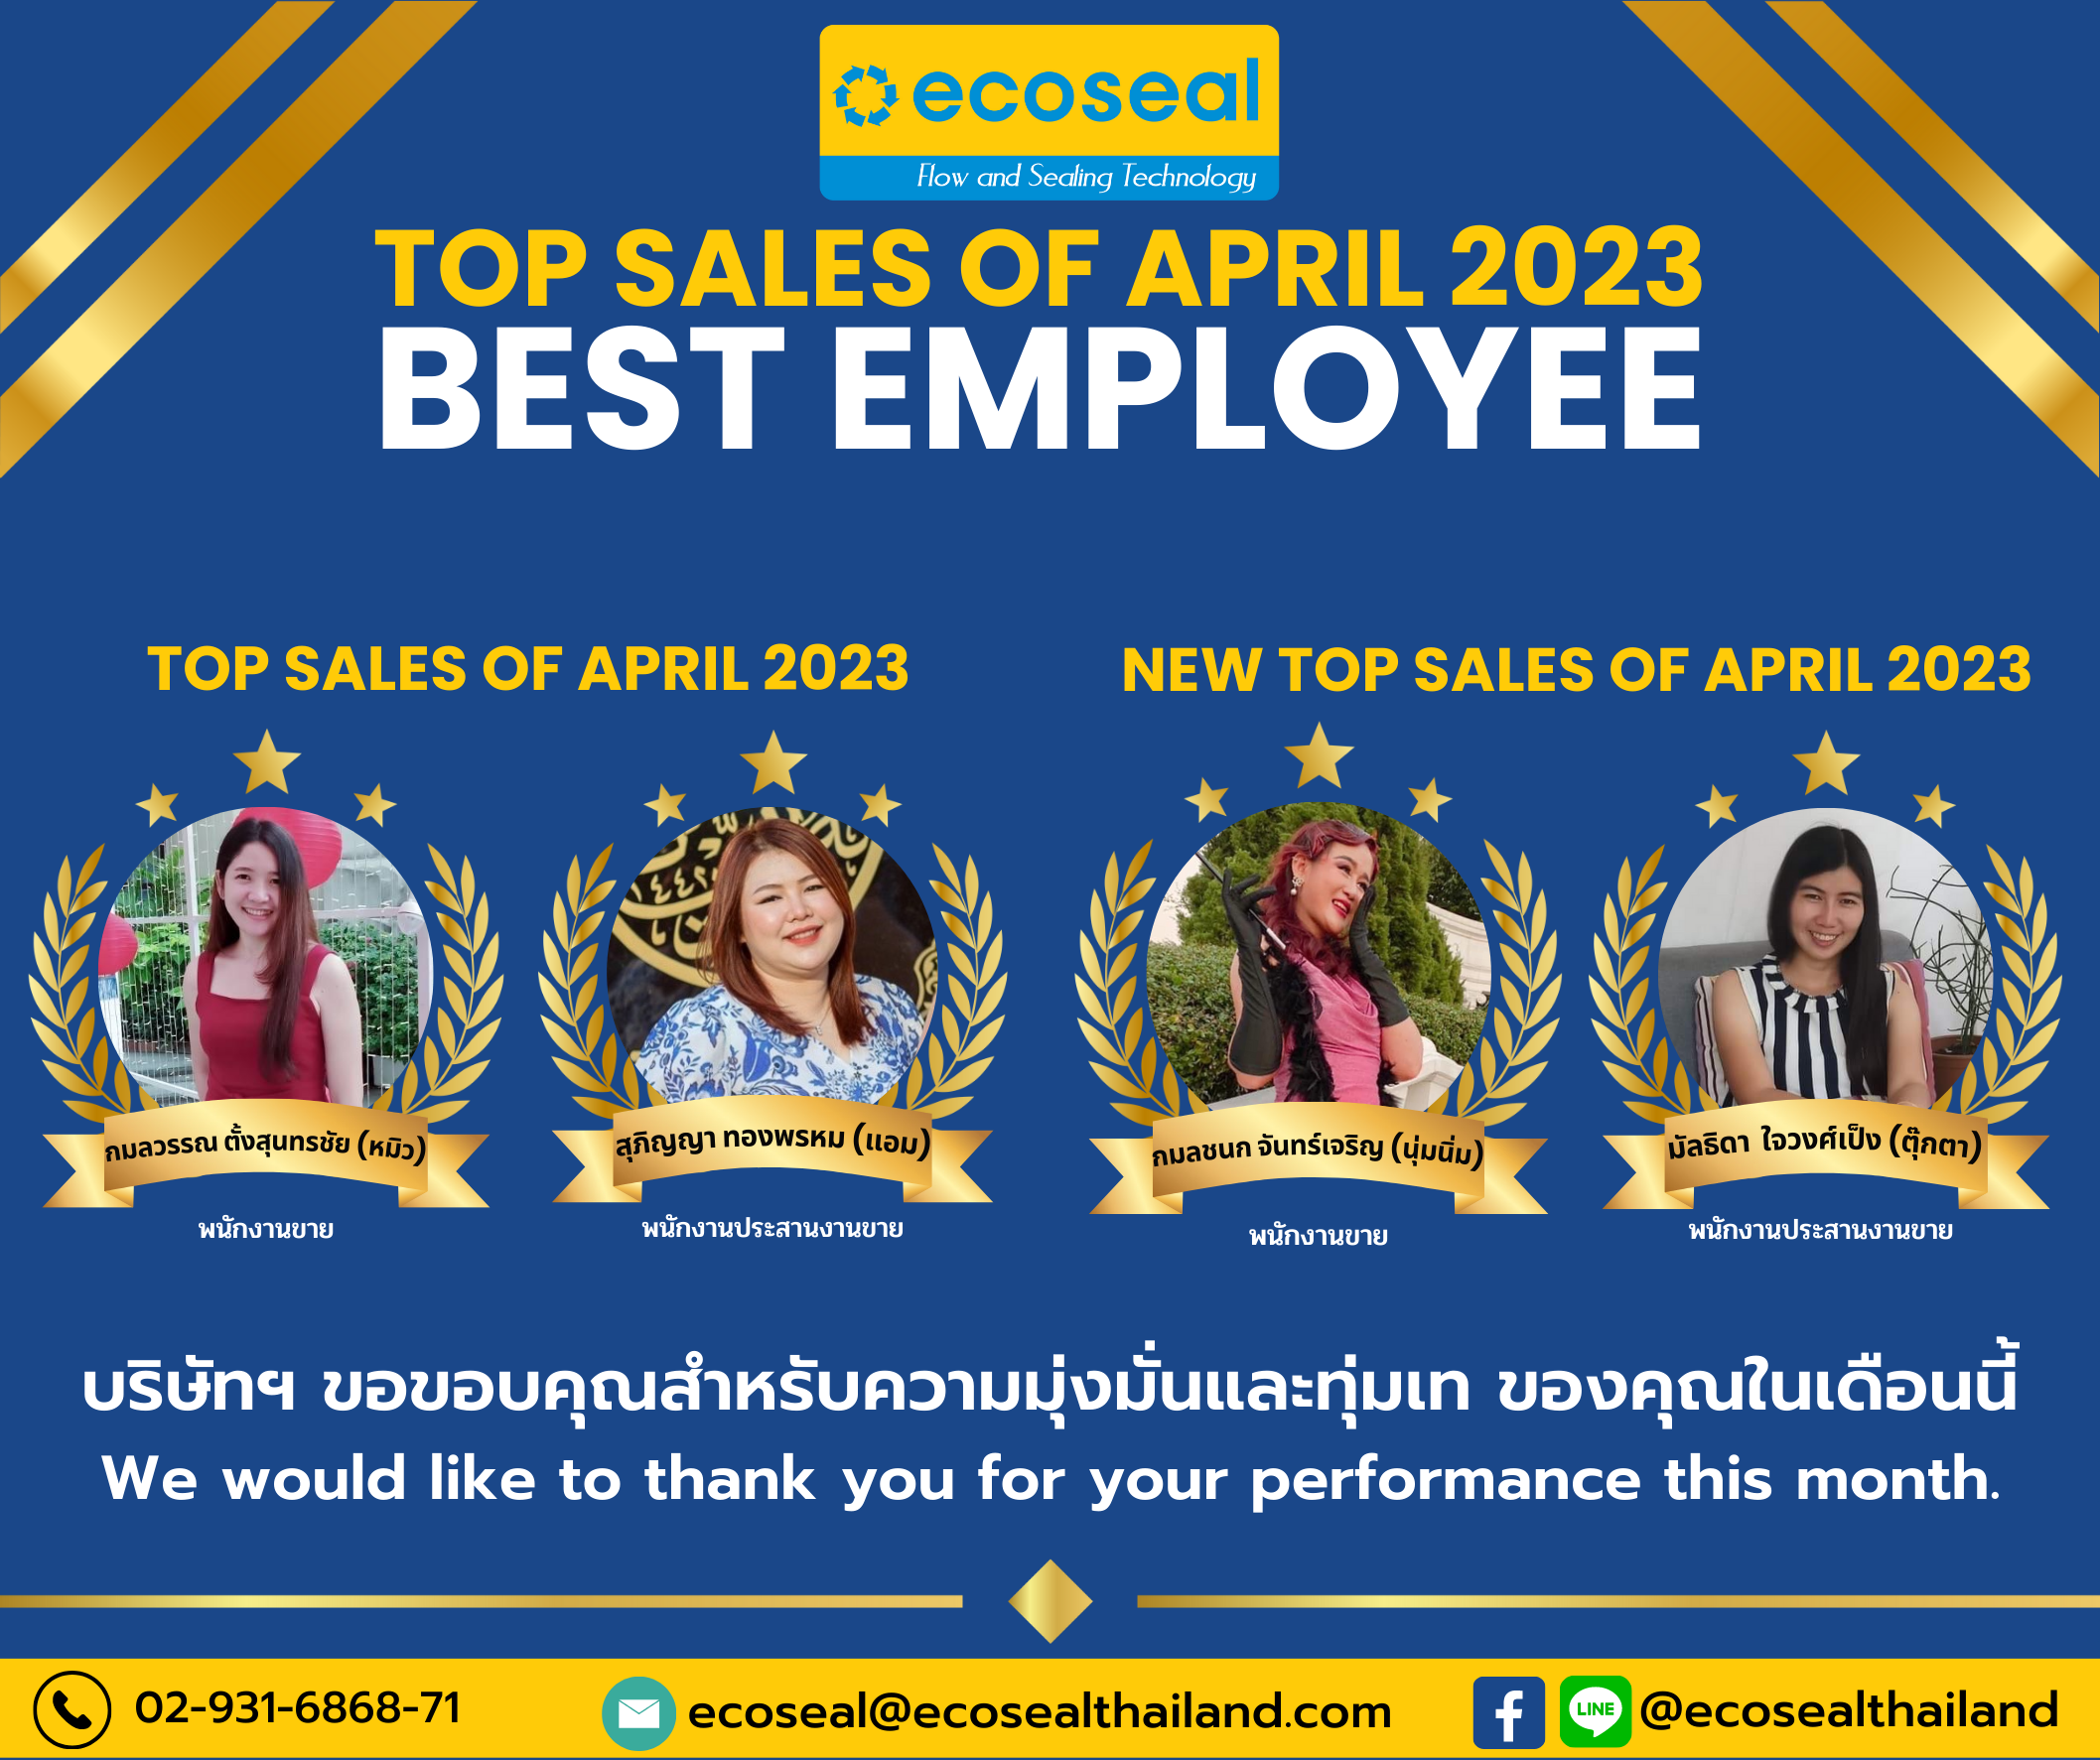 Best Employee TOP SALES OF APRIL 2023